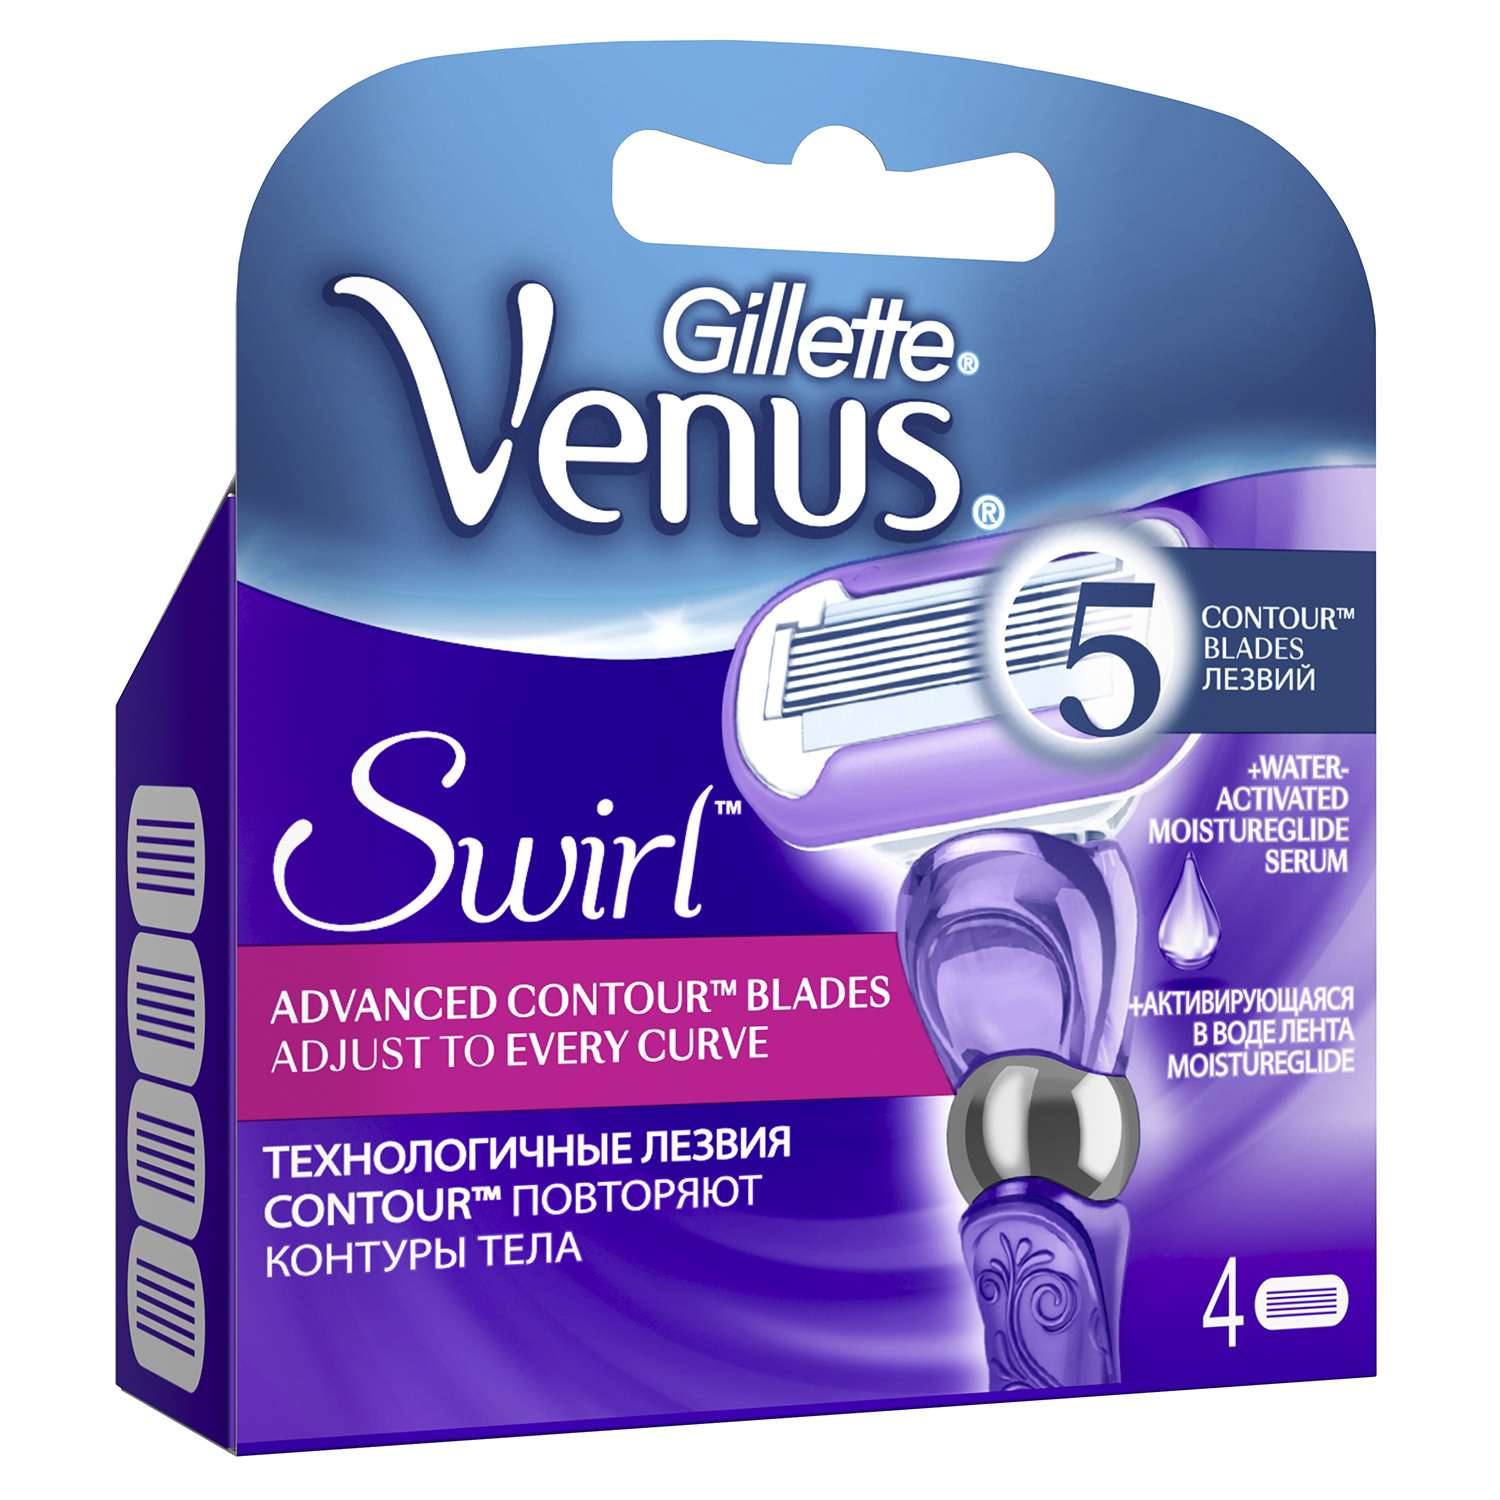 Cменные кассеты для бритья Venus Gillette Swirl 4 шт - фото 2